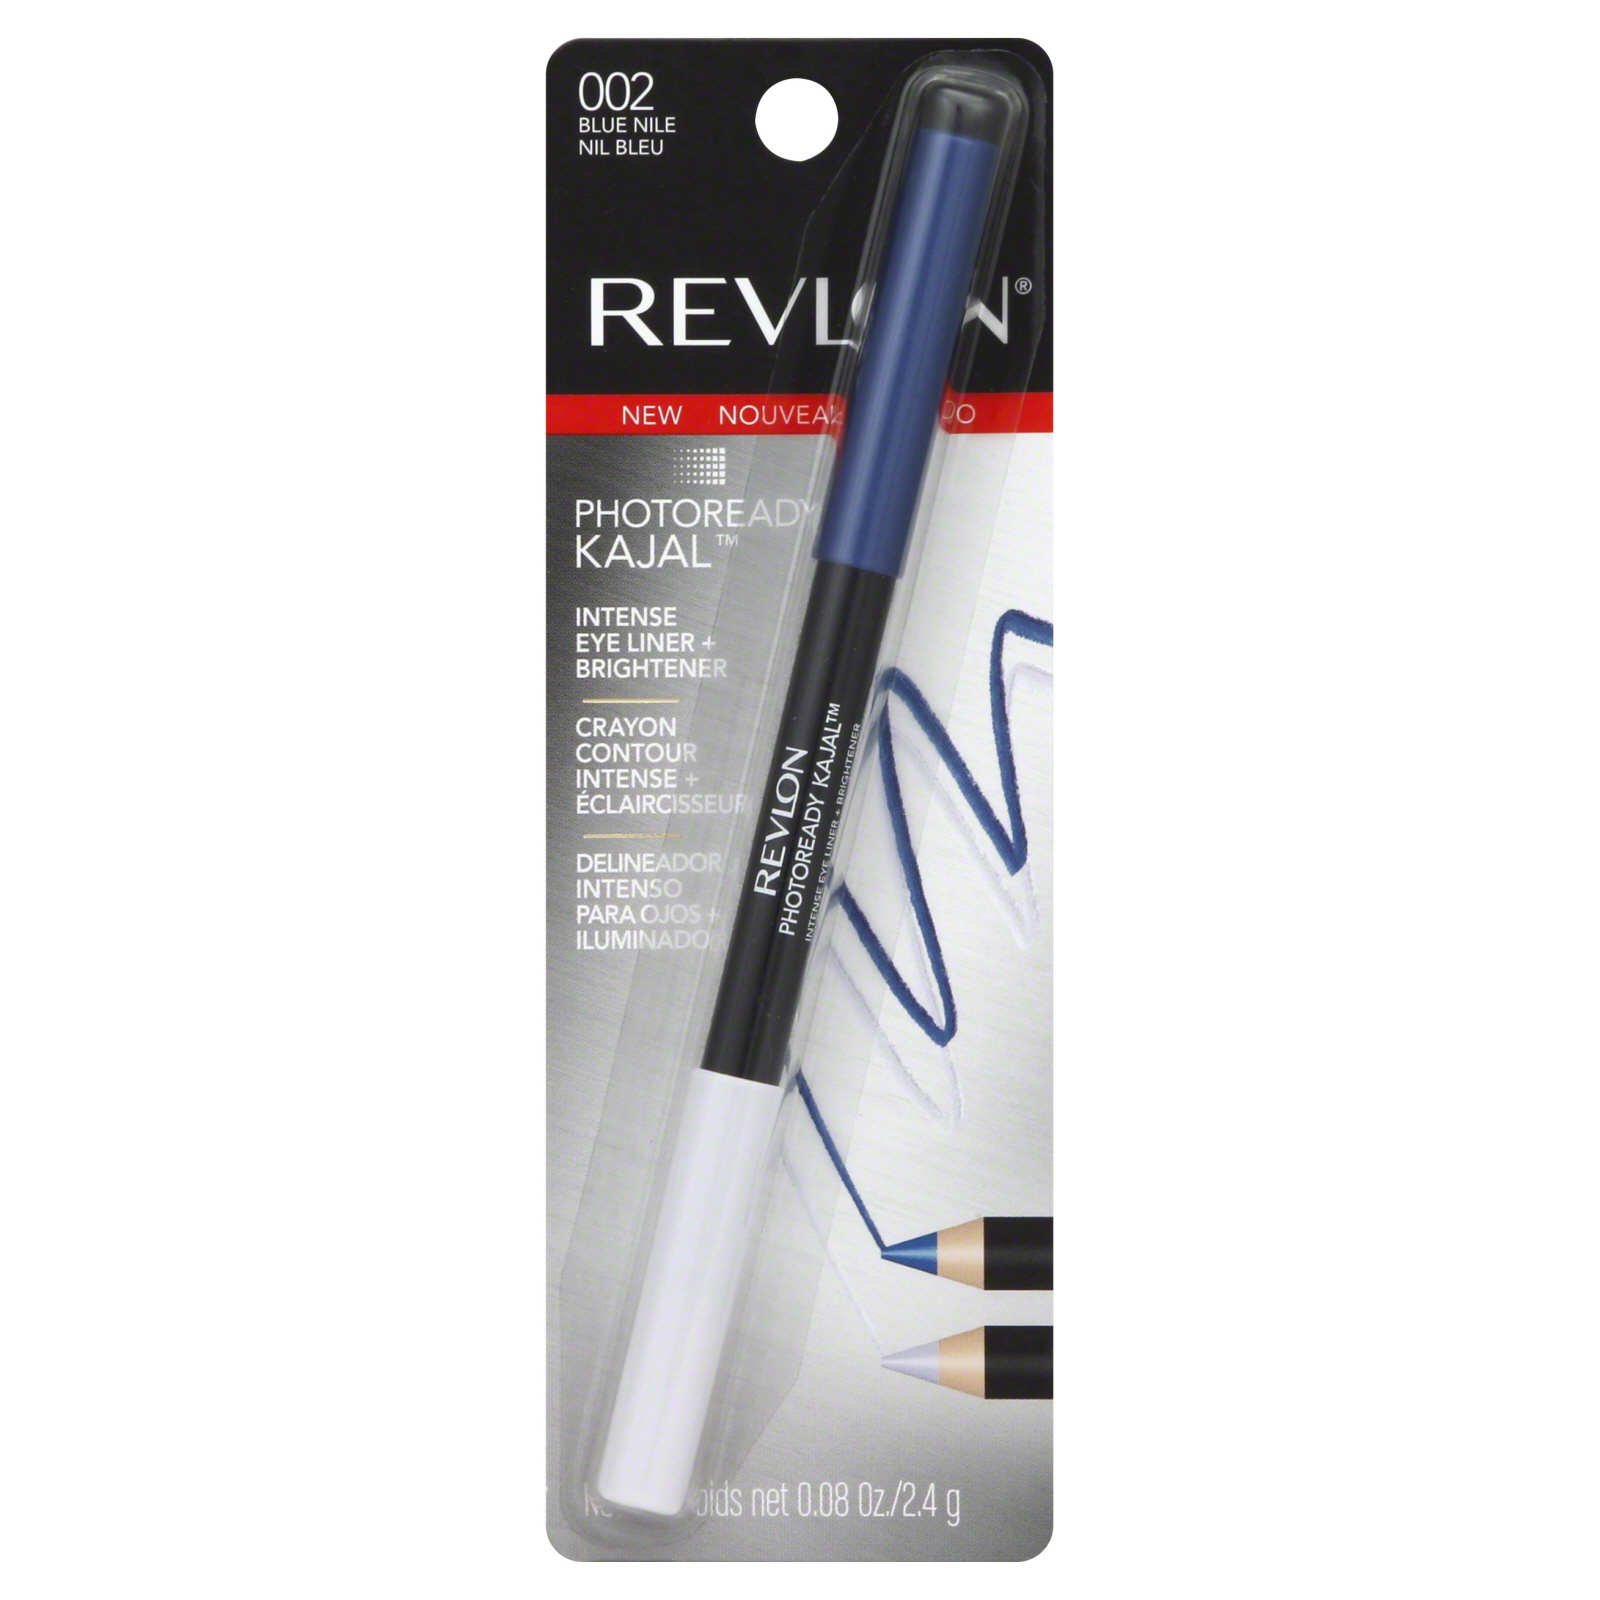 Revlon Photoready Kajal Intense Eye Liner + Brightener, Blue Nile, 0.08 oz